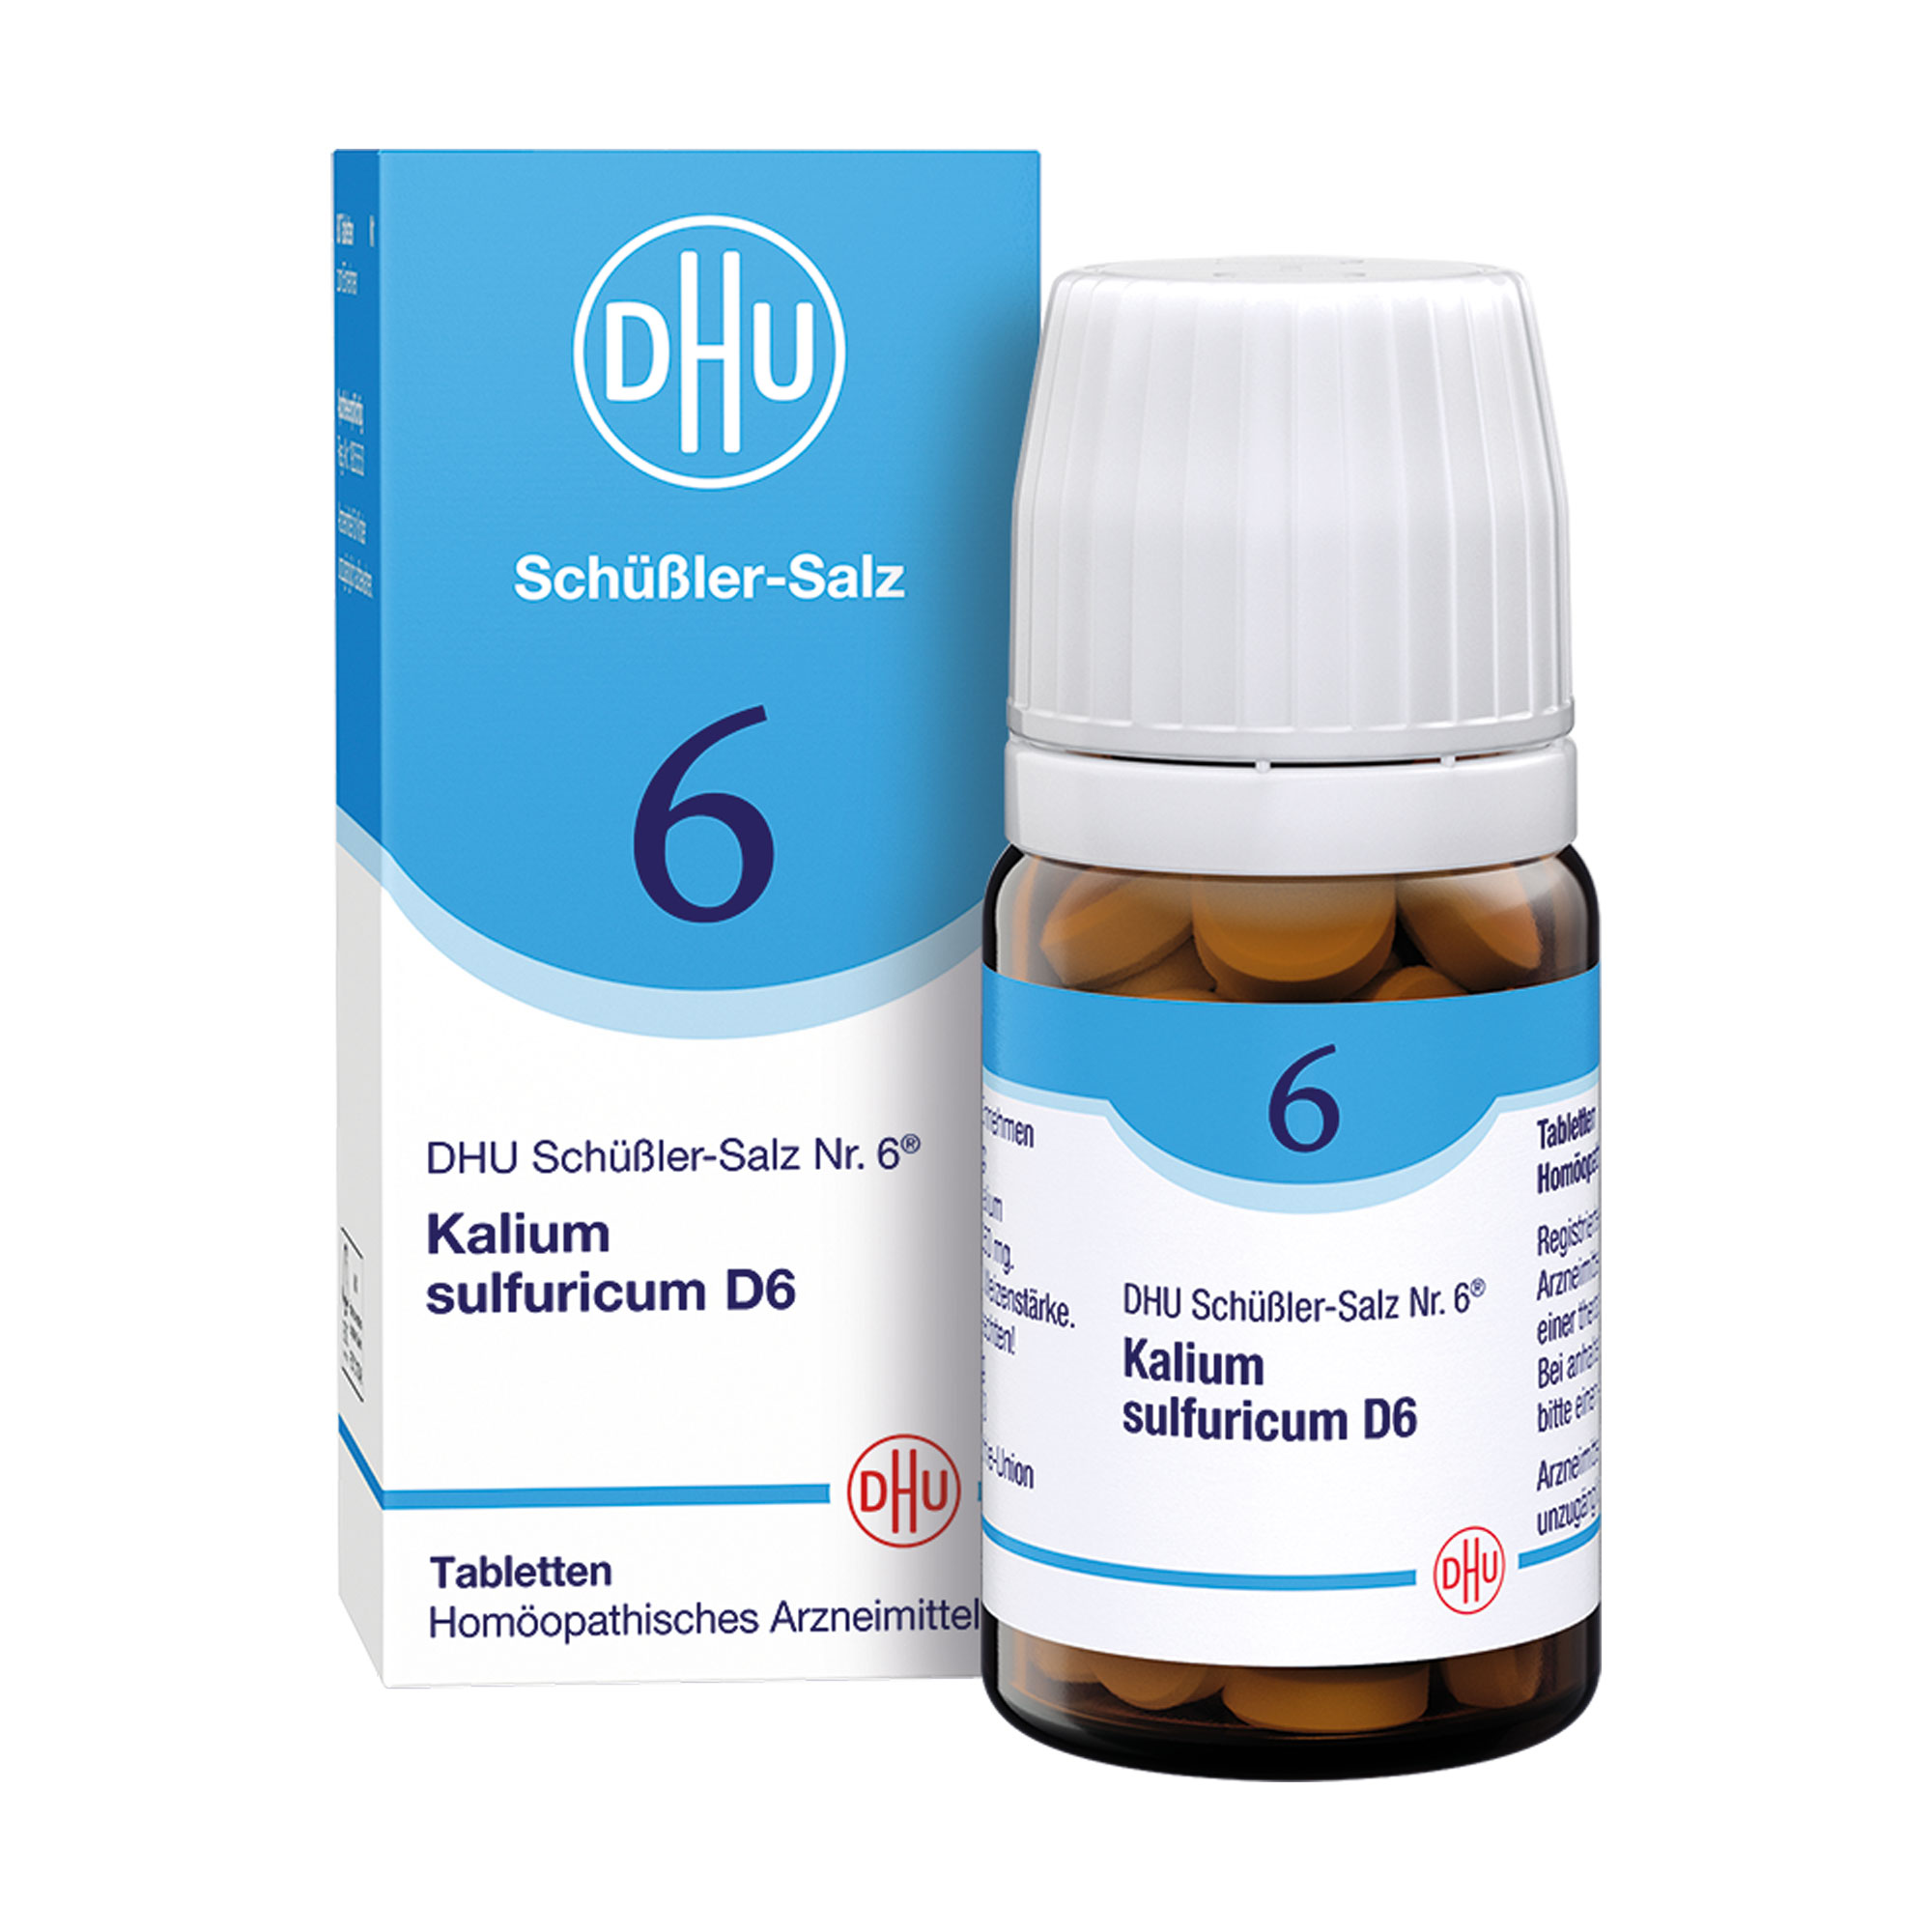 Homöopathisches Arzneimittel mit Kalium sulfuricum Trit. D6.